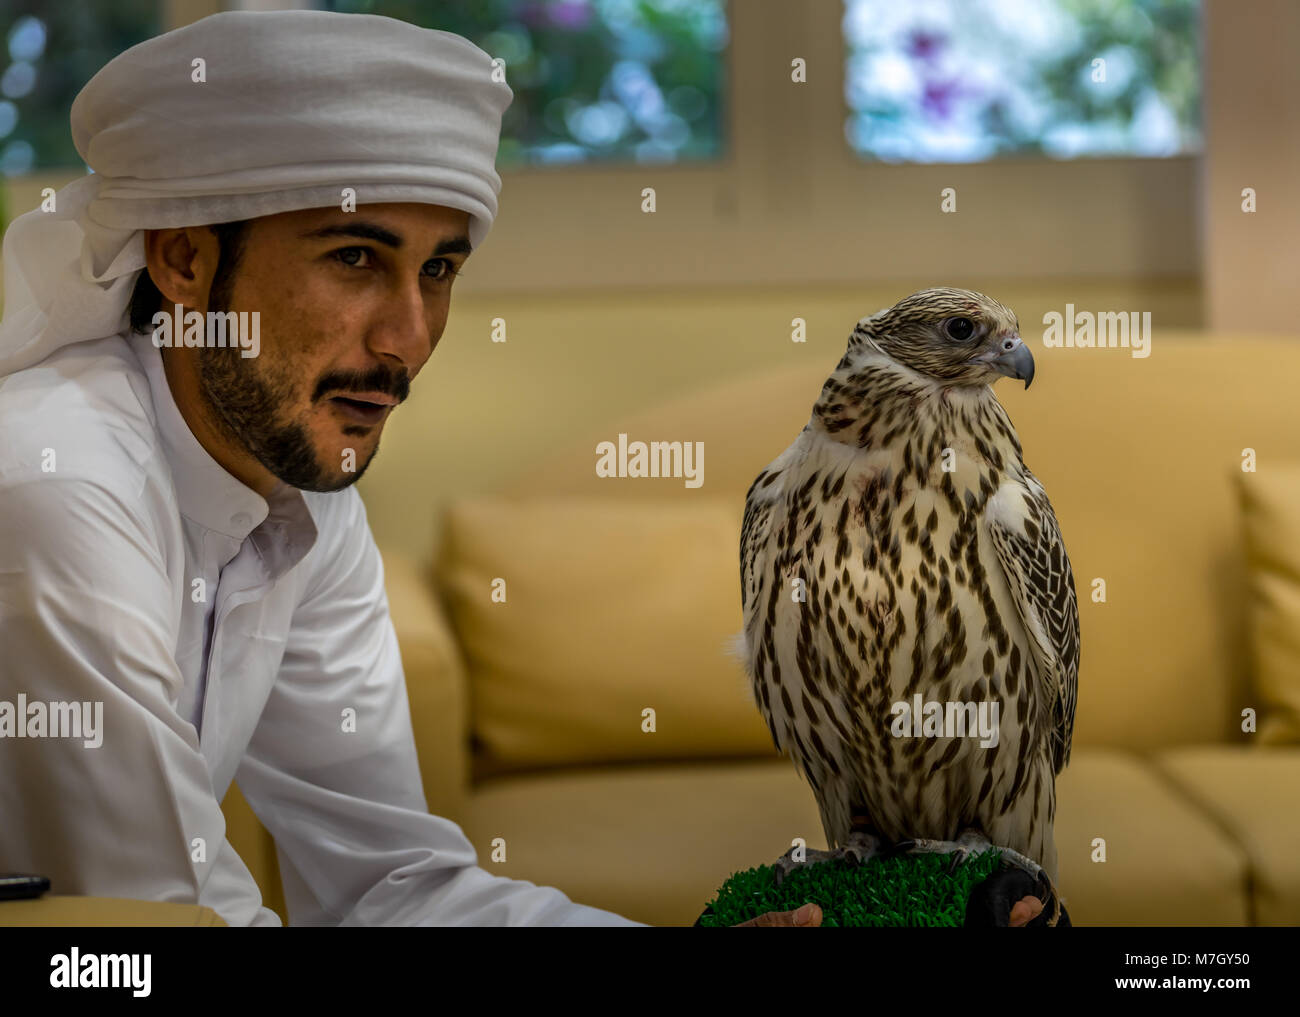 Abu Dhabi, UAE - Jan 11, 2018. De magnifiques oiseaux reste sur le bras de Falconer qui pose pour les visiteurs à l'Hôpital d'Abu Dhabi Falcon Banque D'Images